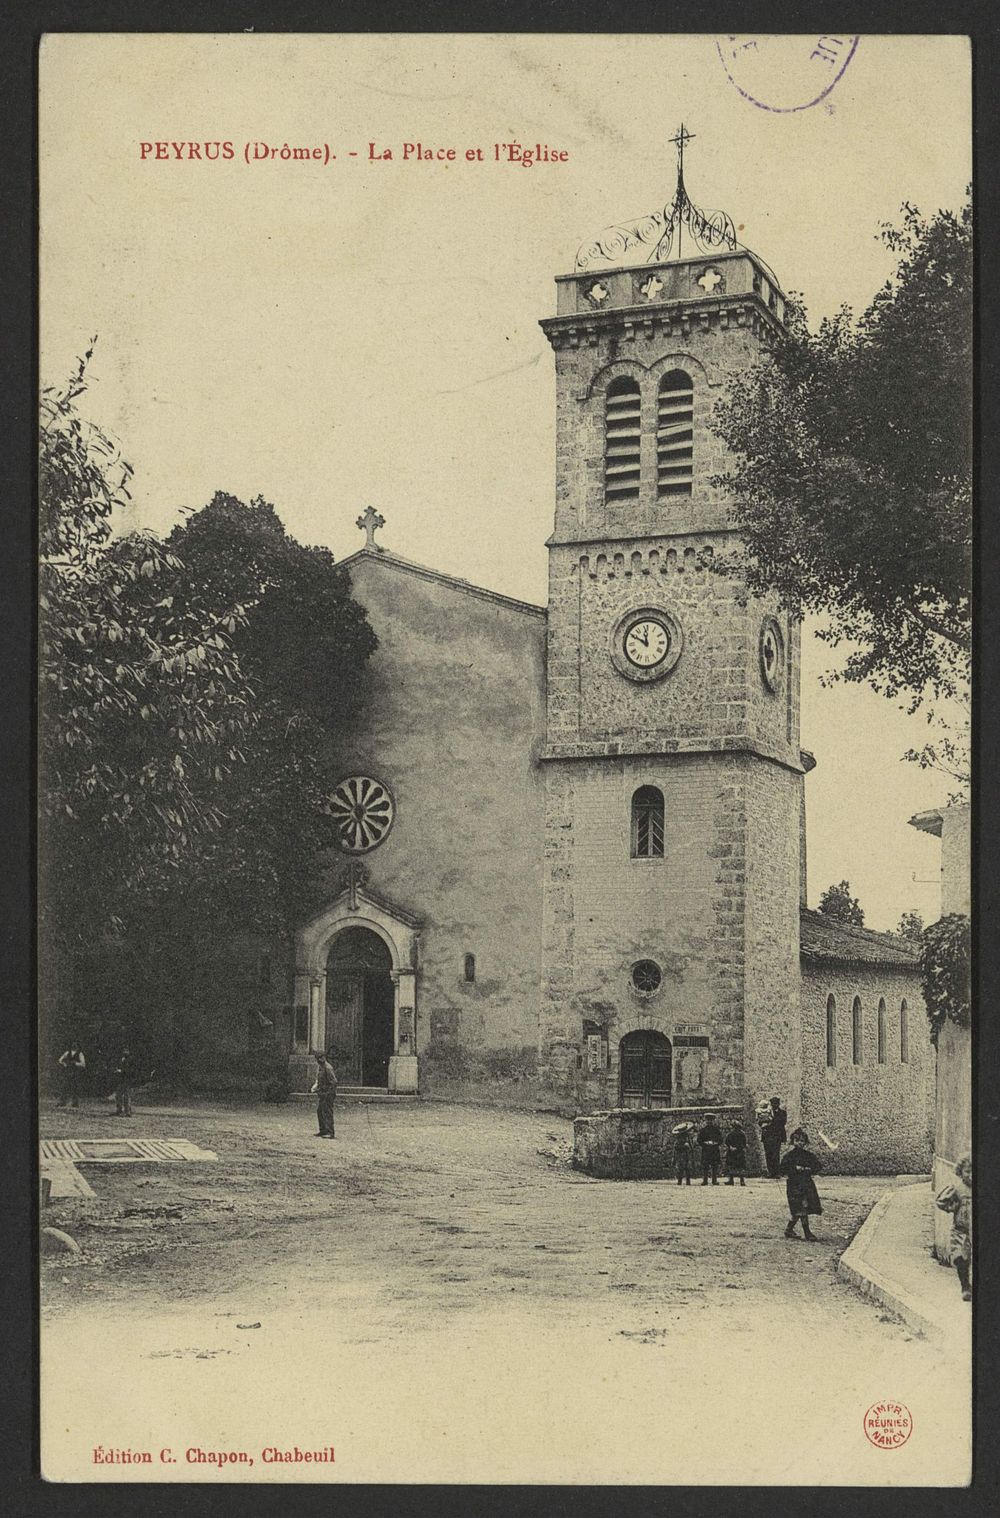 Peyrus (Drôme) - La place et l'église